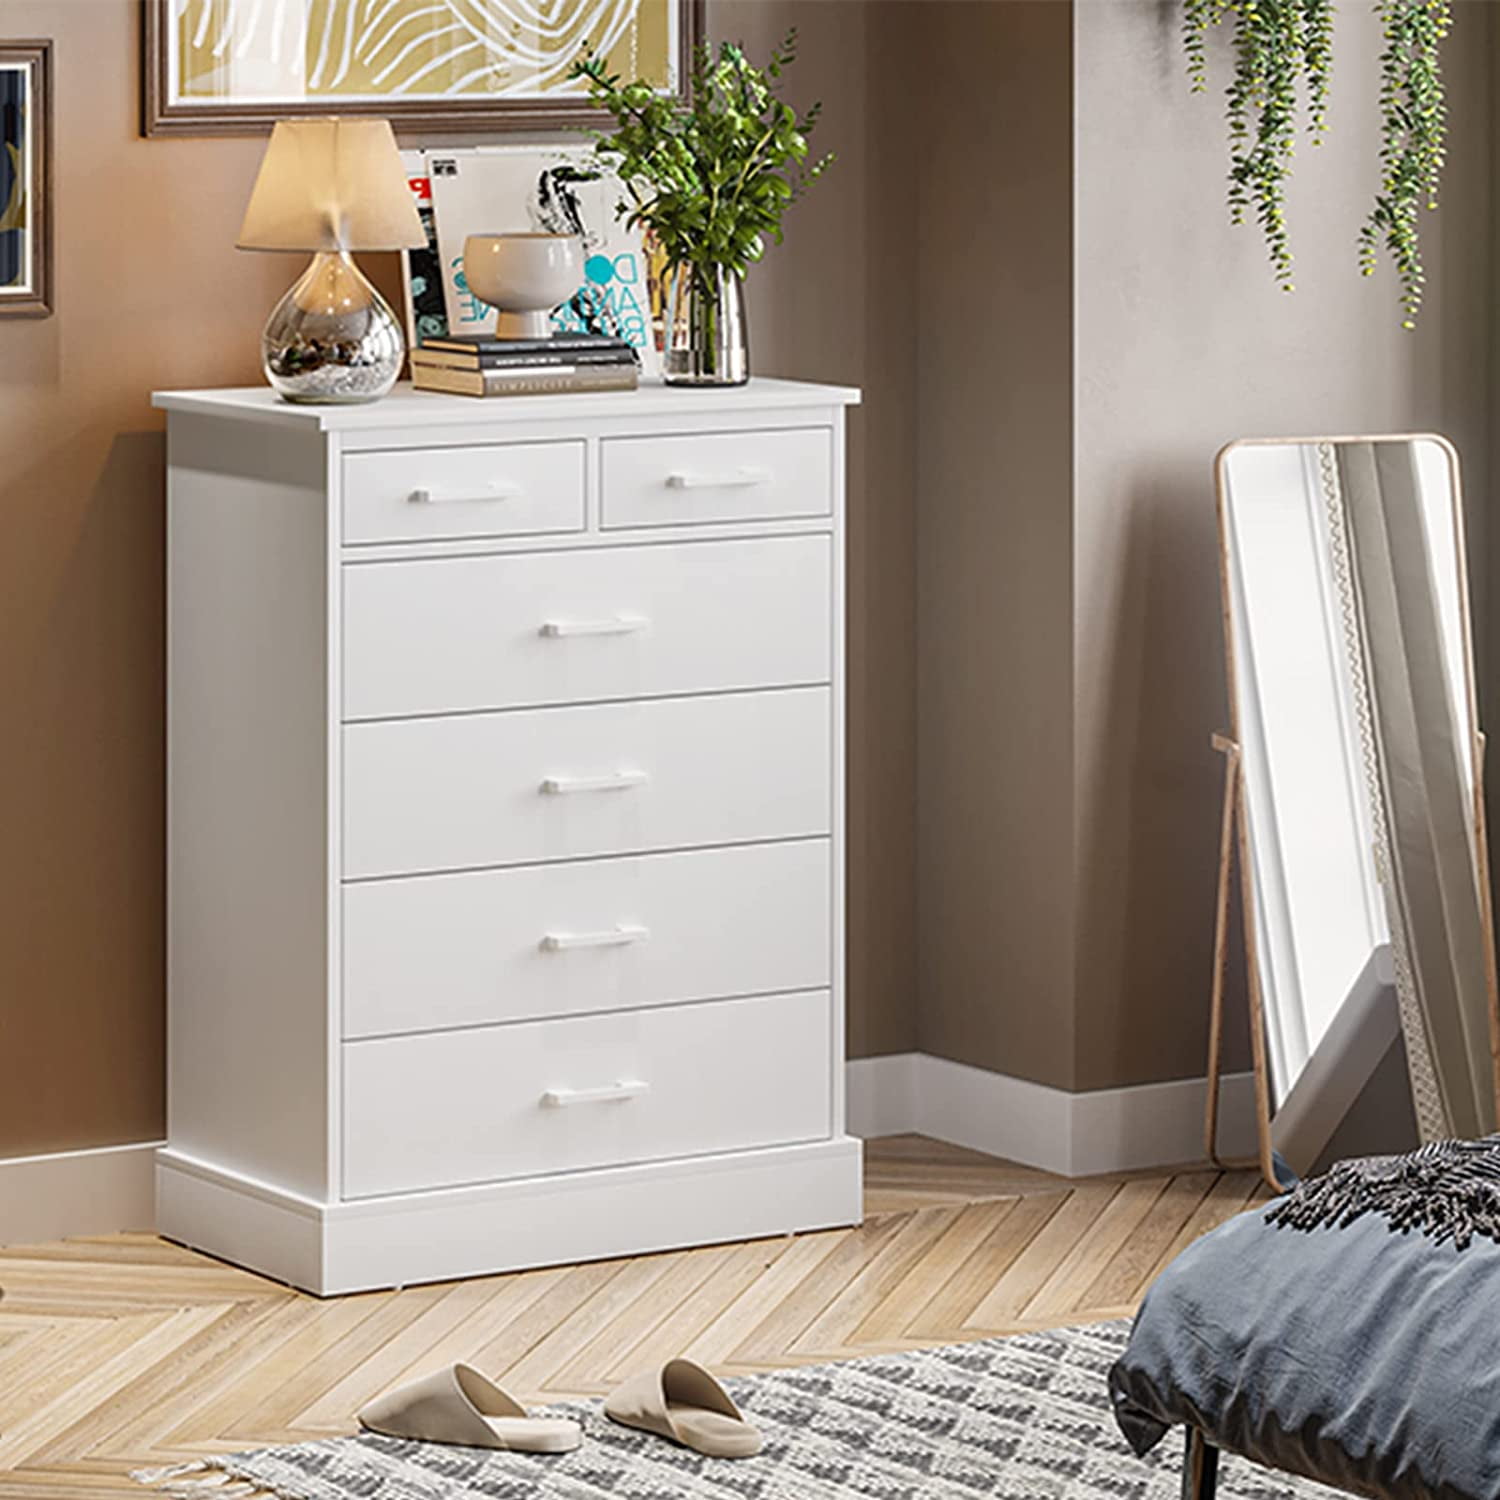 Wooden Dresser Chest Bedroom Drawer Storage Furniture Organizer 6 Drawers White 